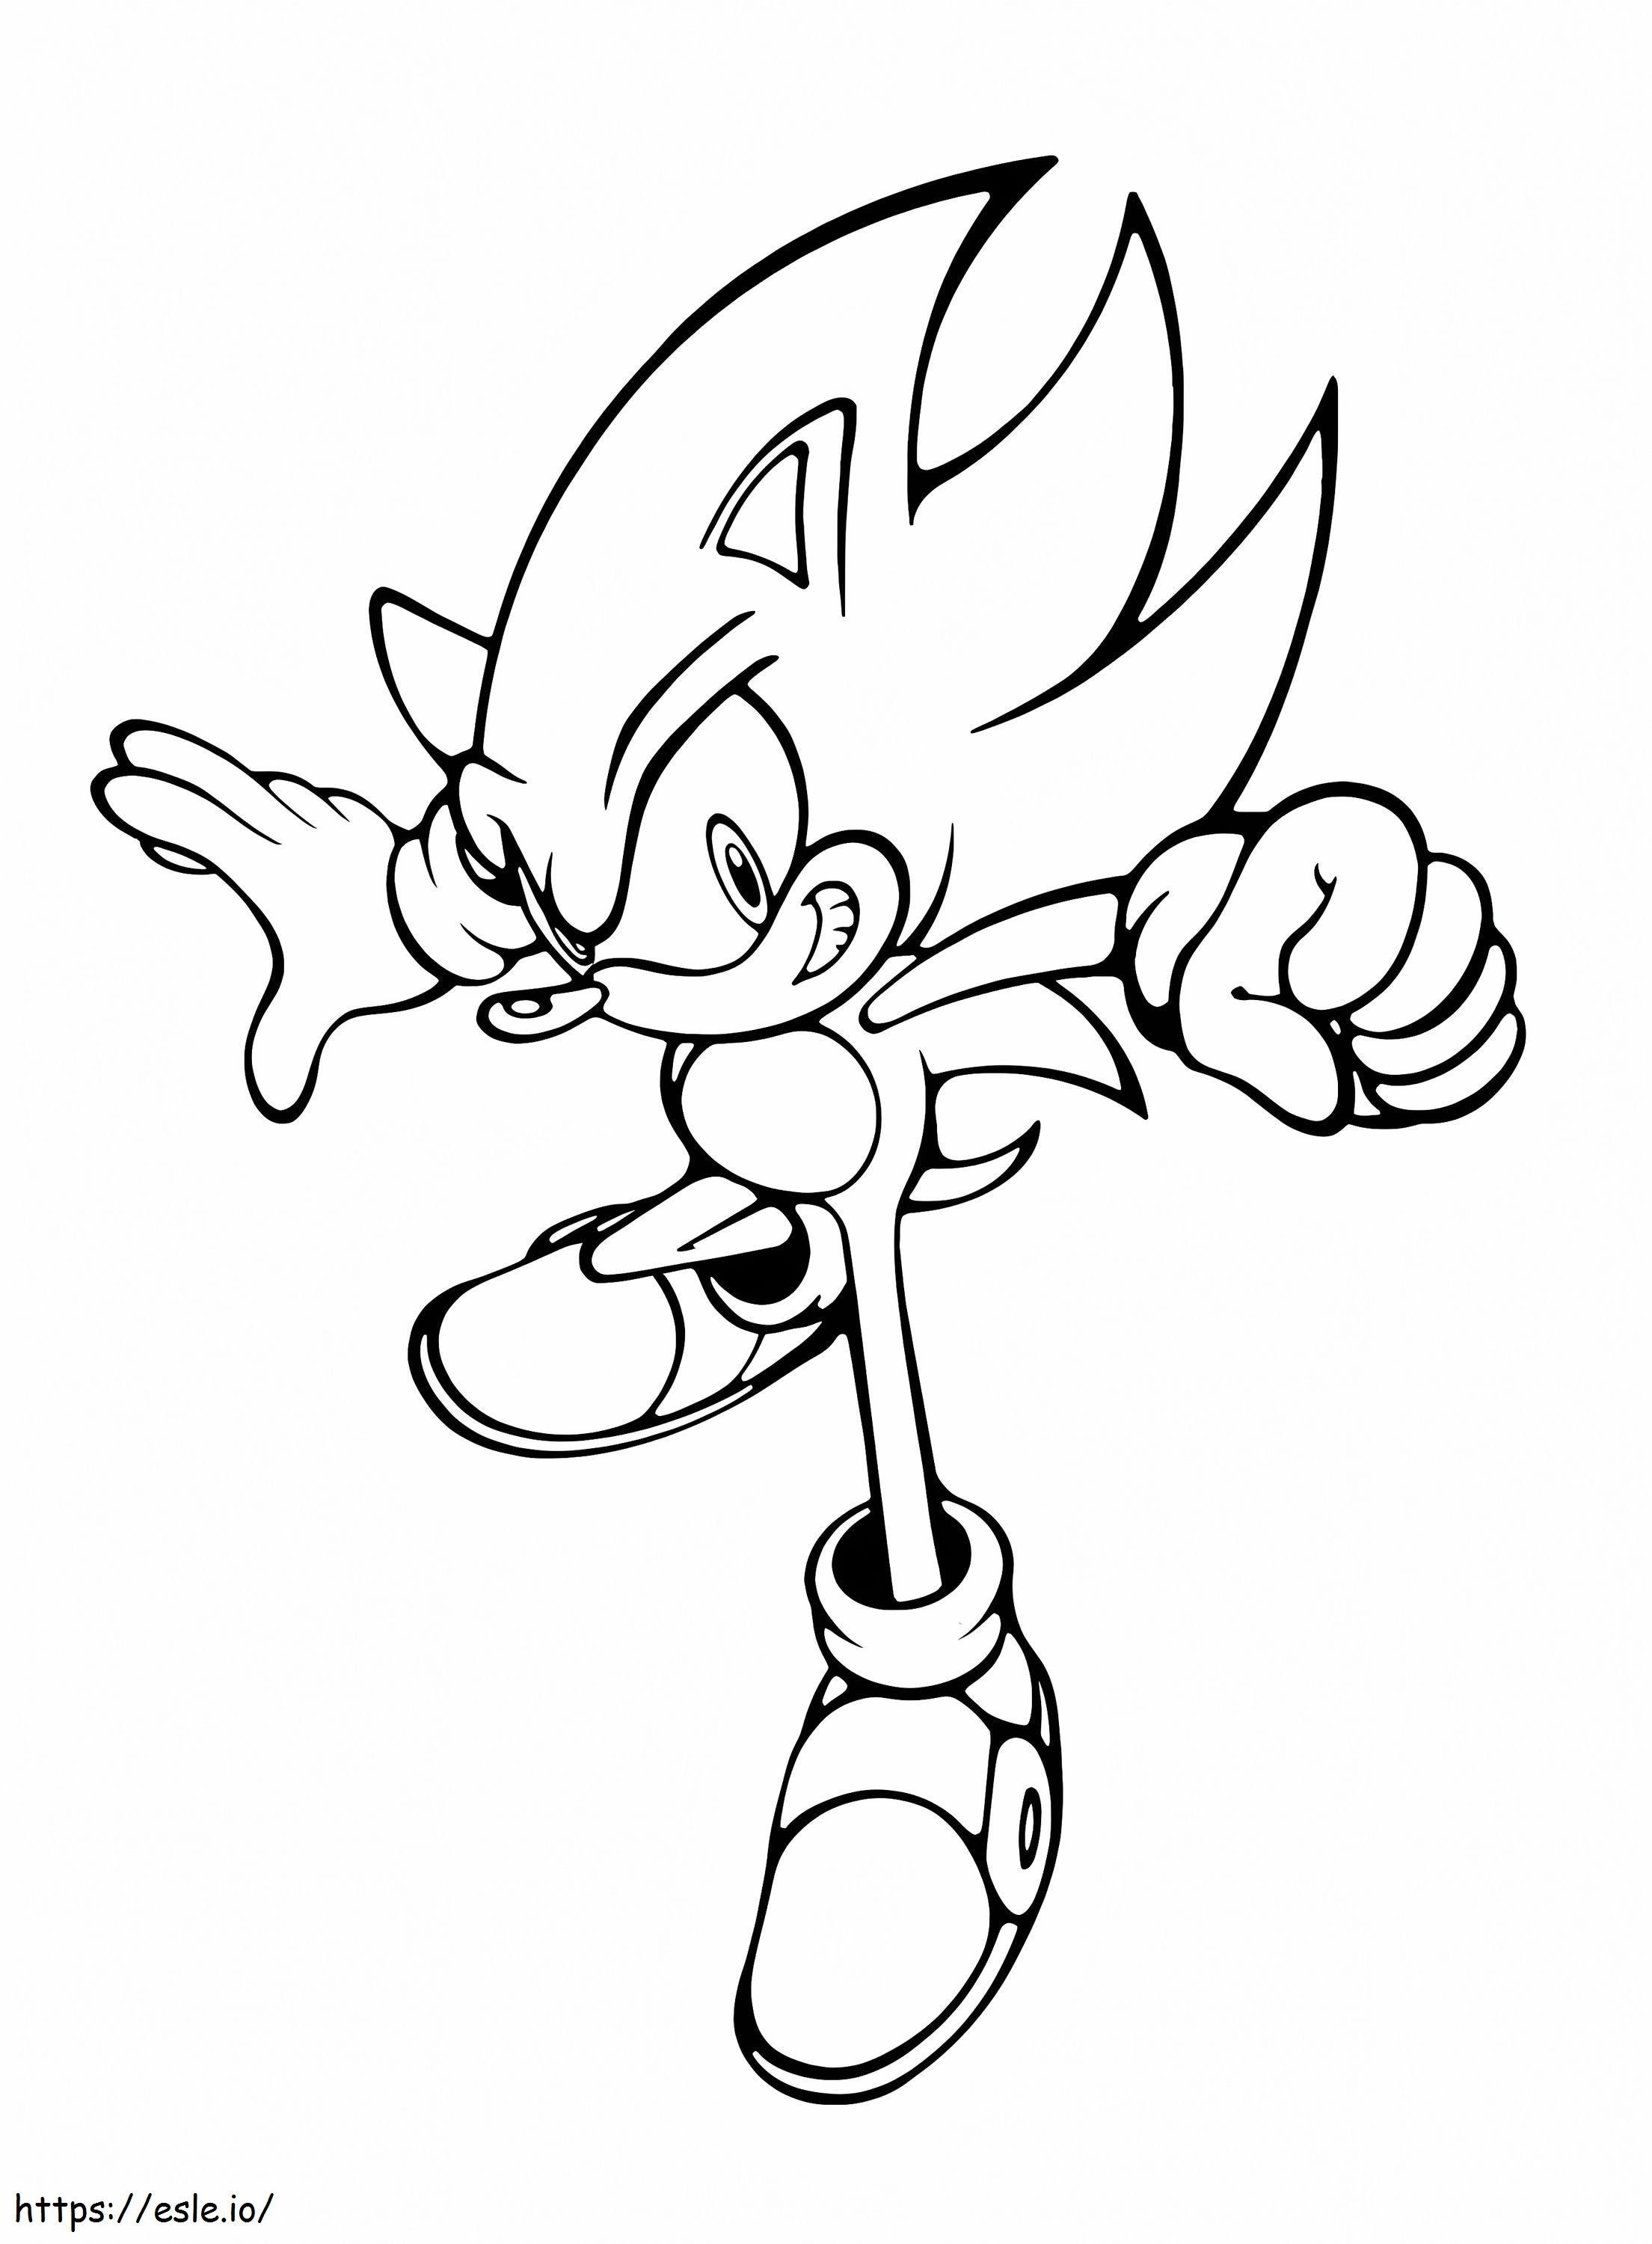 Coloriage Imprimer Sonic à imprimer dessin